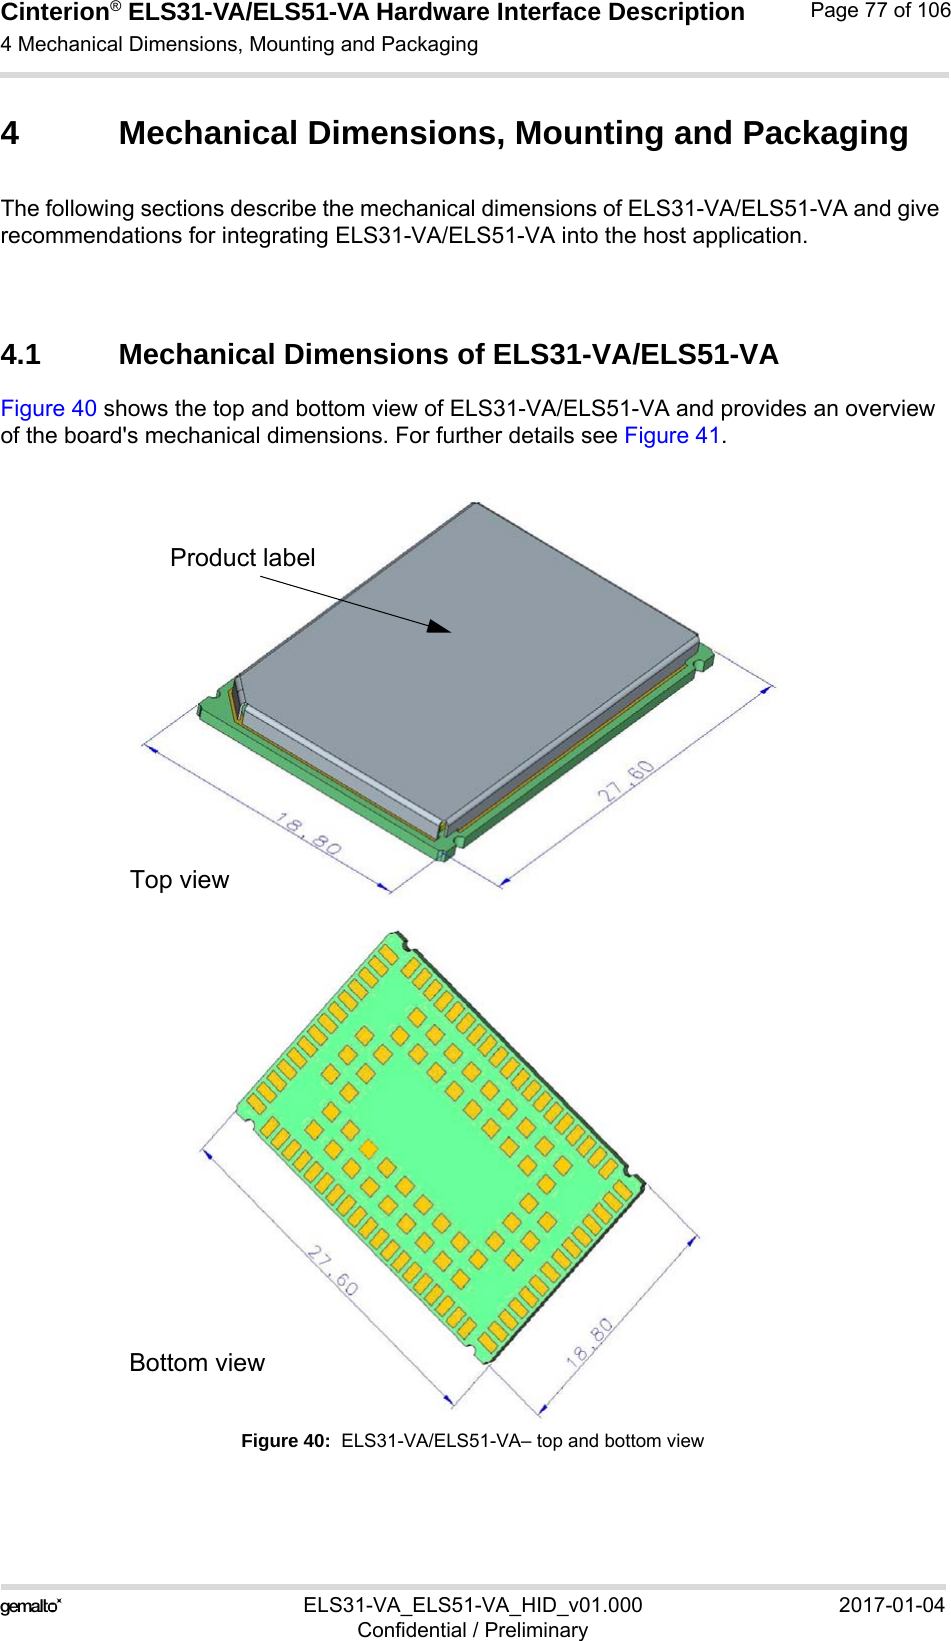 Cinterion® ELS31-VA/ELS51-VA Hardware Interface Description4 Mechanical Dimensions, Mounting and Packaging92ELS31-VA_ELS51-VA_HID_v01.000 2017-01-04Confidential / PreliminaryPage 77 of 1064 Mechanical Dimensions, Mounting and PackagingThe following sections describe the mechanical dimensions of ELS31-VA/ELS51-VA and give recommendations for integrating ELS31-VA/ELS51-VA into the host application.4.1 Mechanical Dimensions of ELS31-VA/ELS51-VA Figure 40 shows the top and bottom view of ELS31-VA/ELS51-VA and provides an overview of the board&apos;s mechanical dimensions. For further details see Figure 41. Figure 40:  ELS31-VA/ELS51-VA– top and bottom viewProduct labelTop viewBottom view